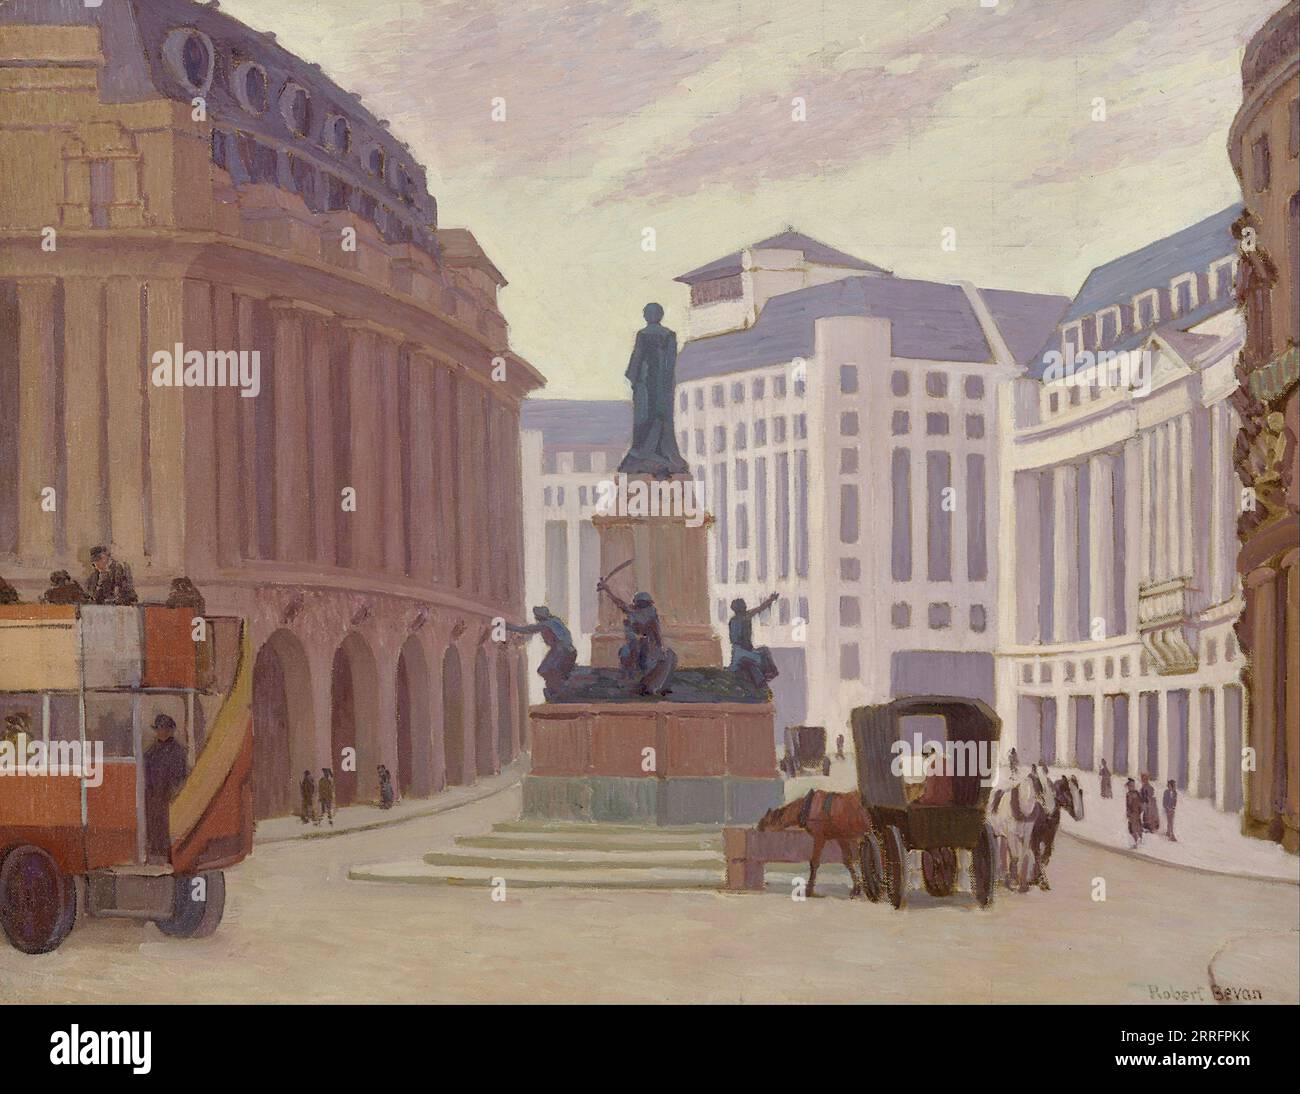 Robert Bevan - Aldwych Londres - 1924 Banque D'Images